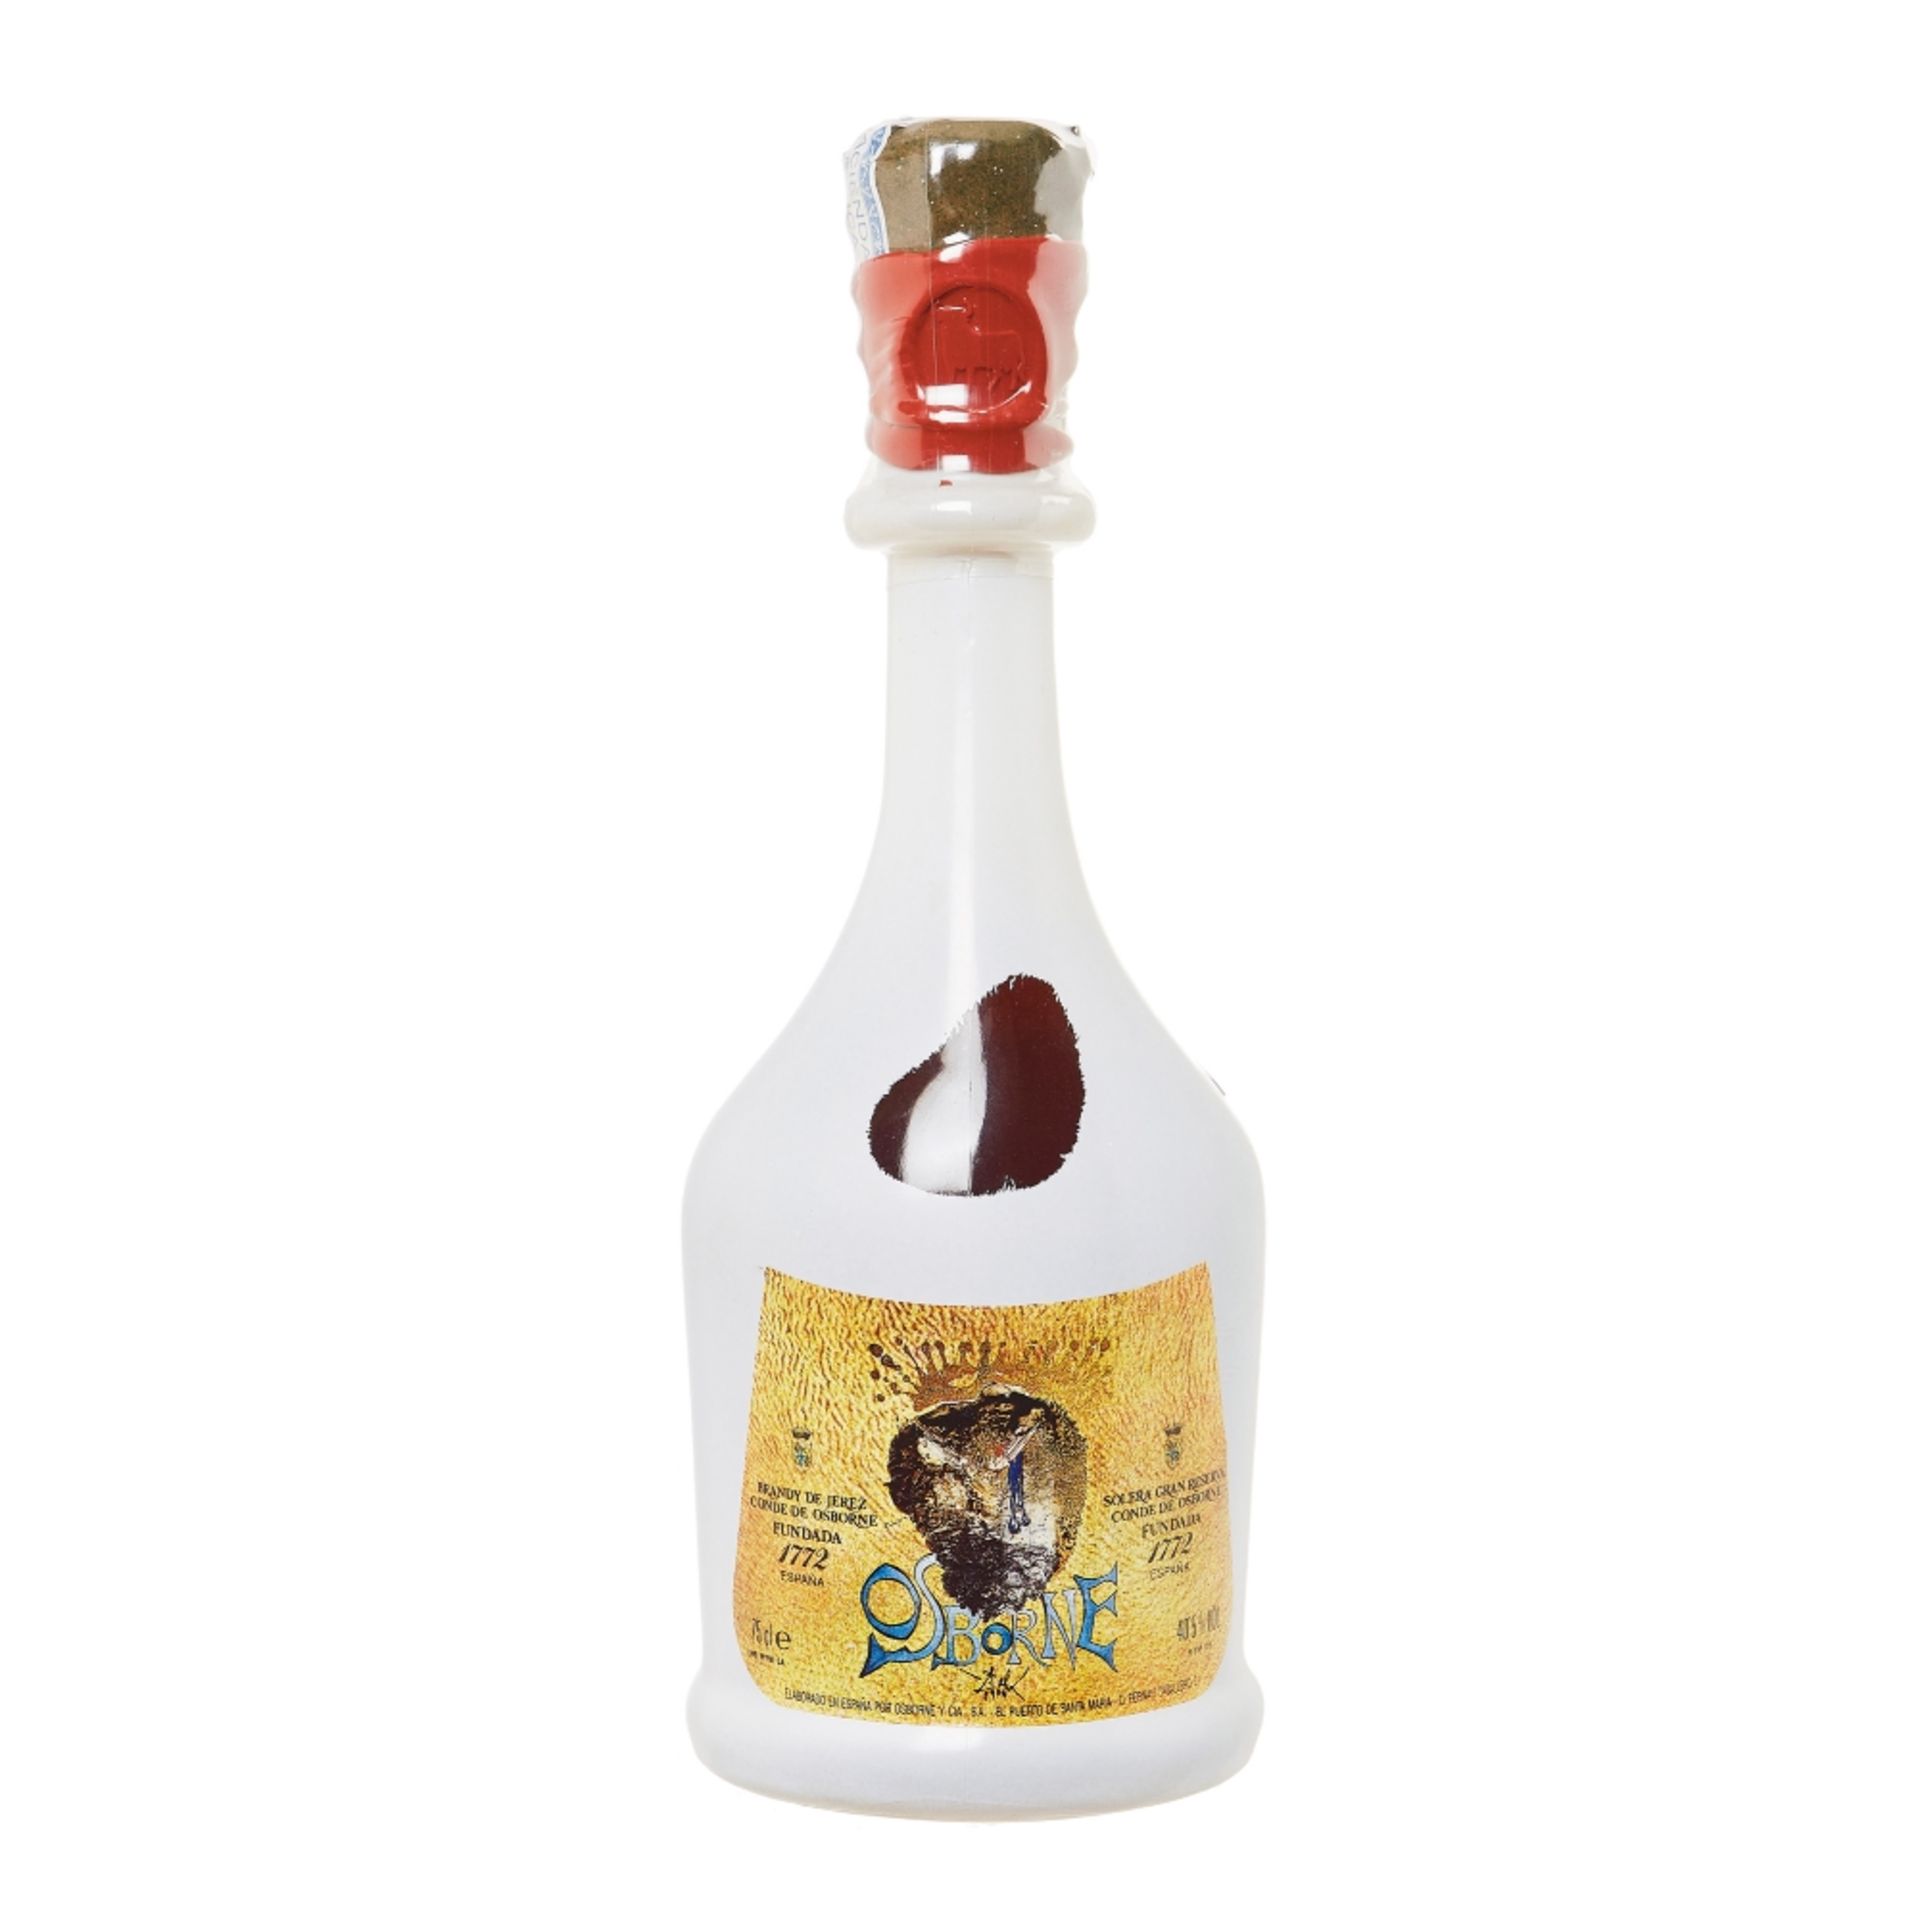 Botella de colección Brandy Conde de Osborne diseñada y firmada por Salvador Dalí en 1964.